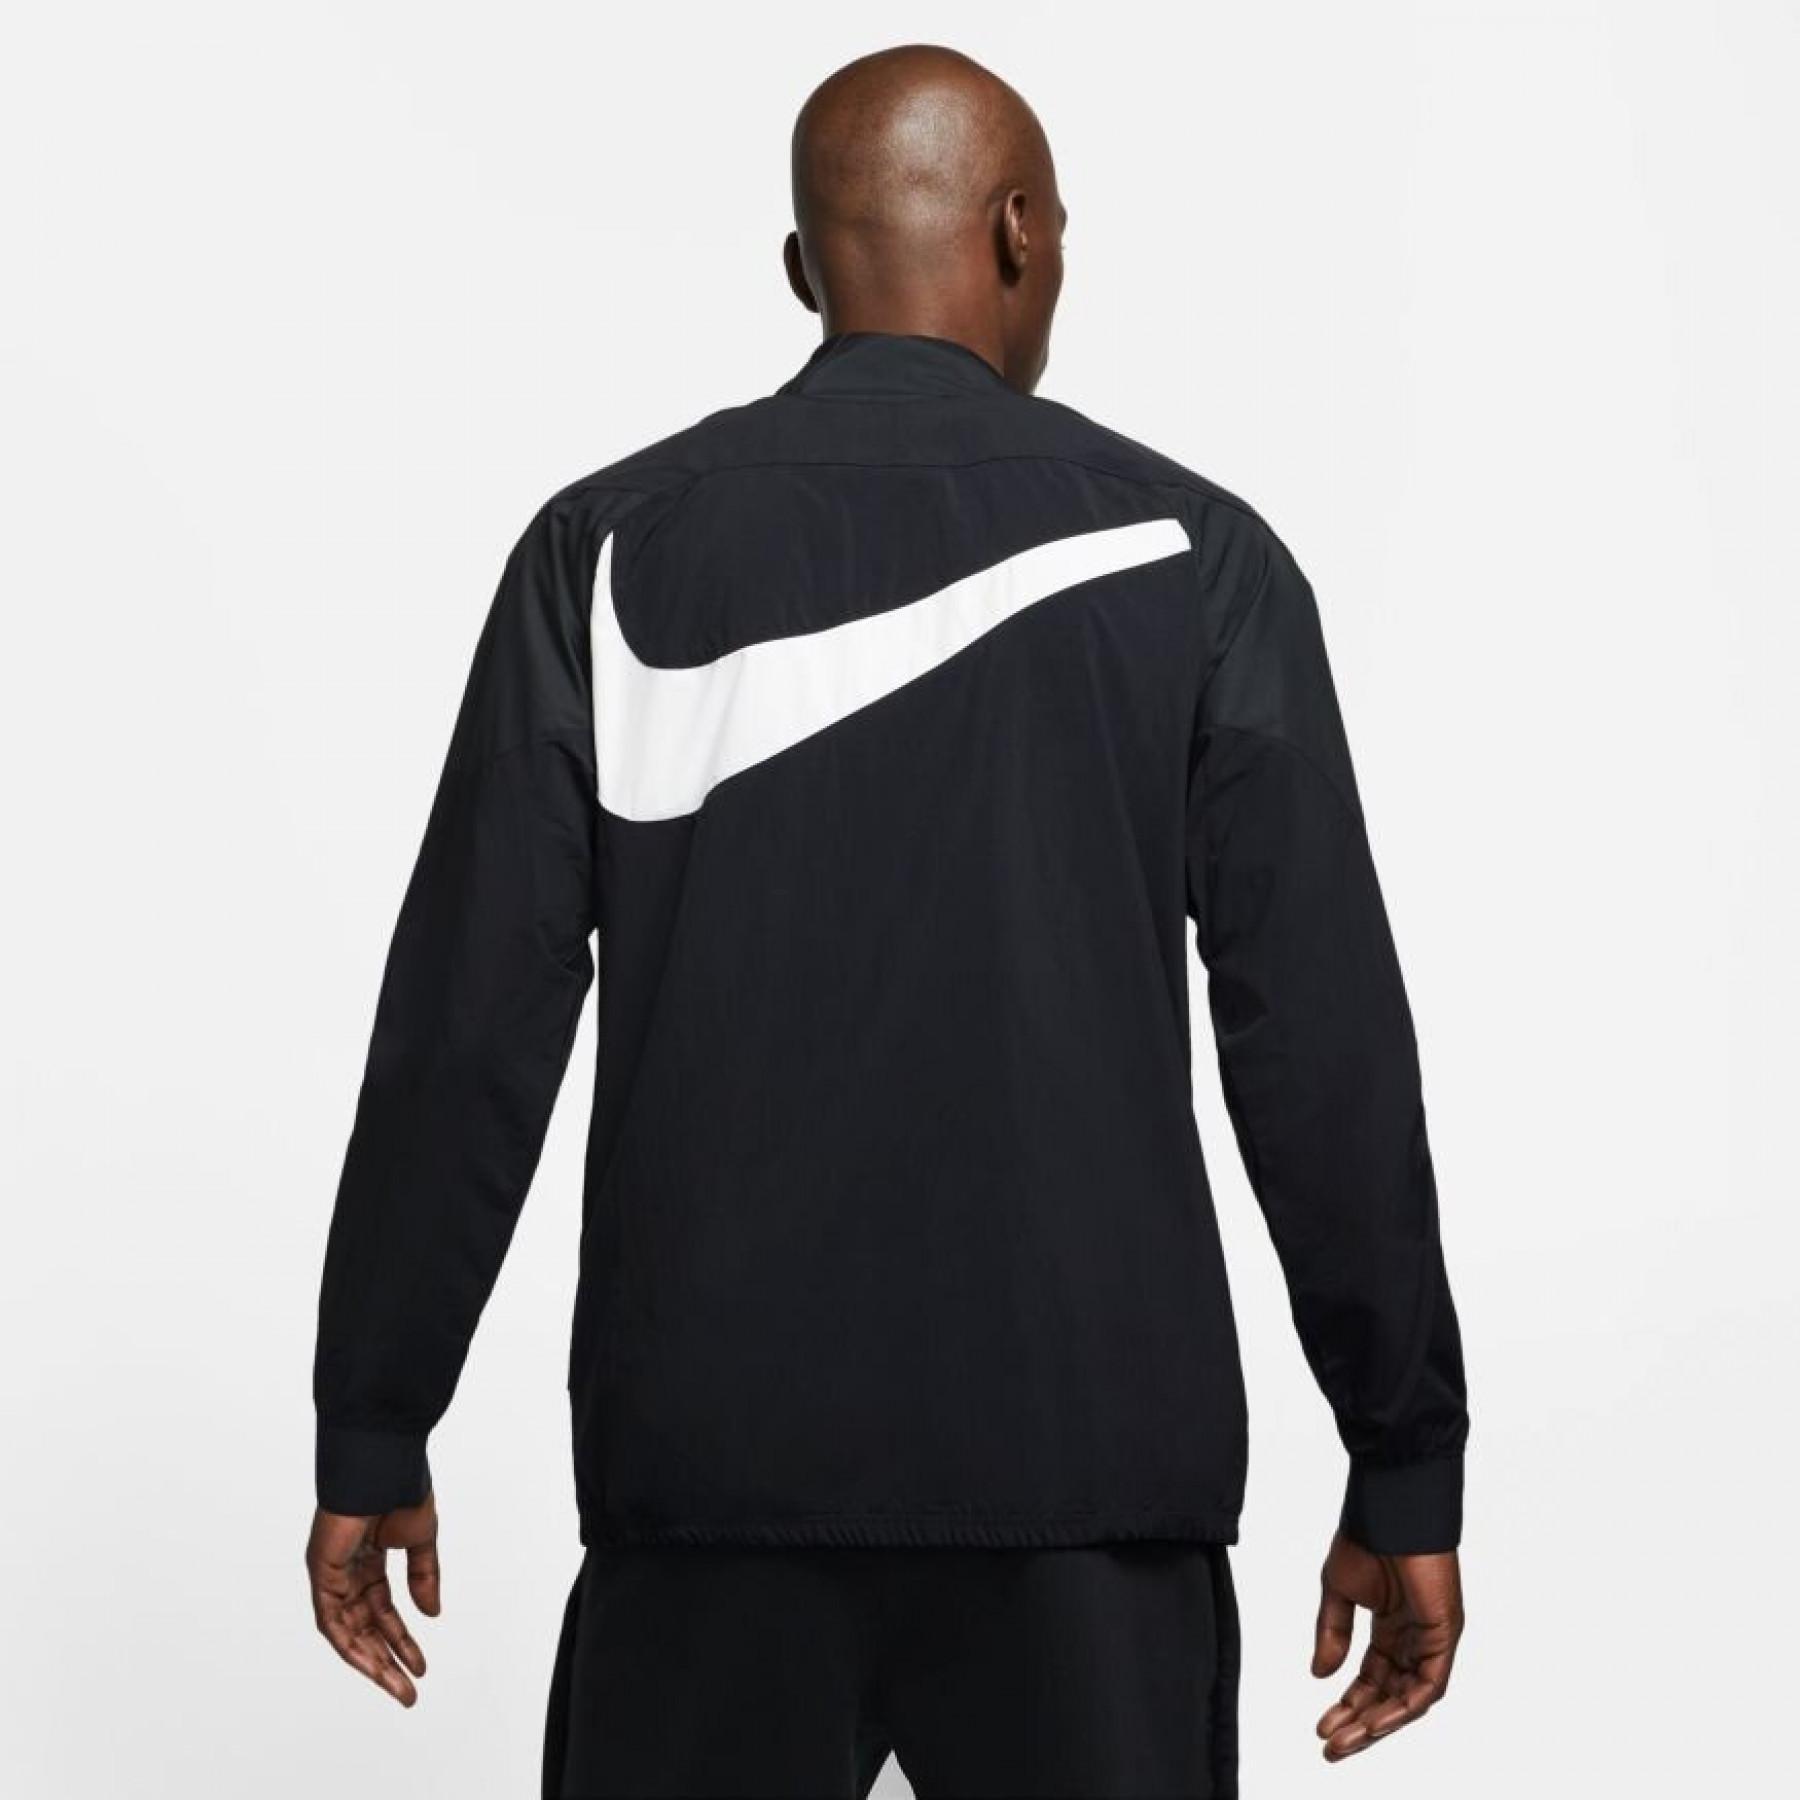 Training jacket Nike F.C 